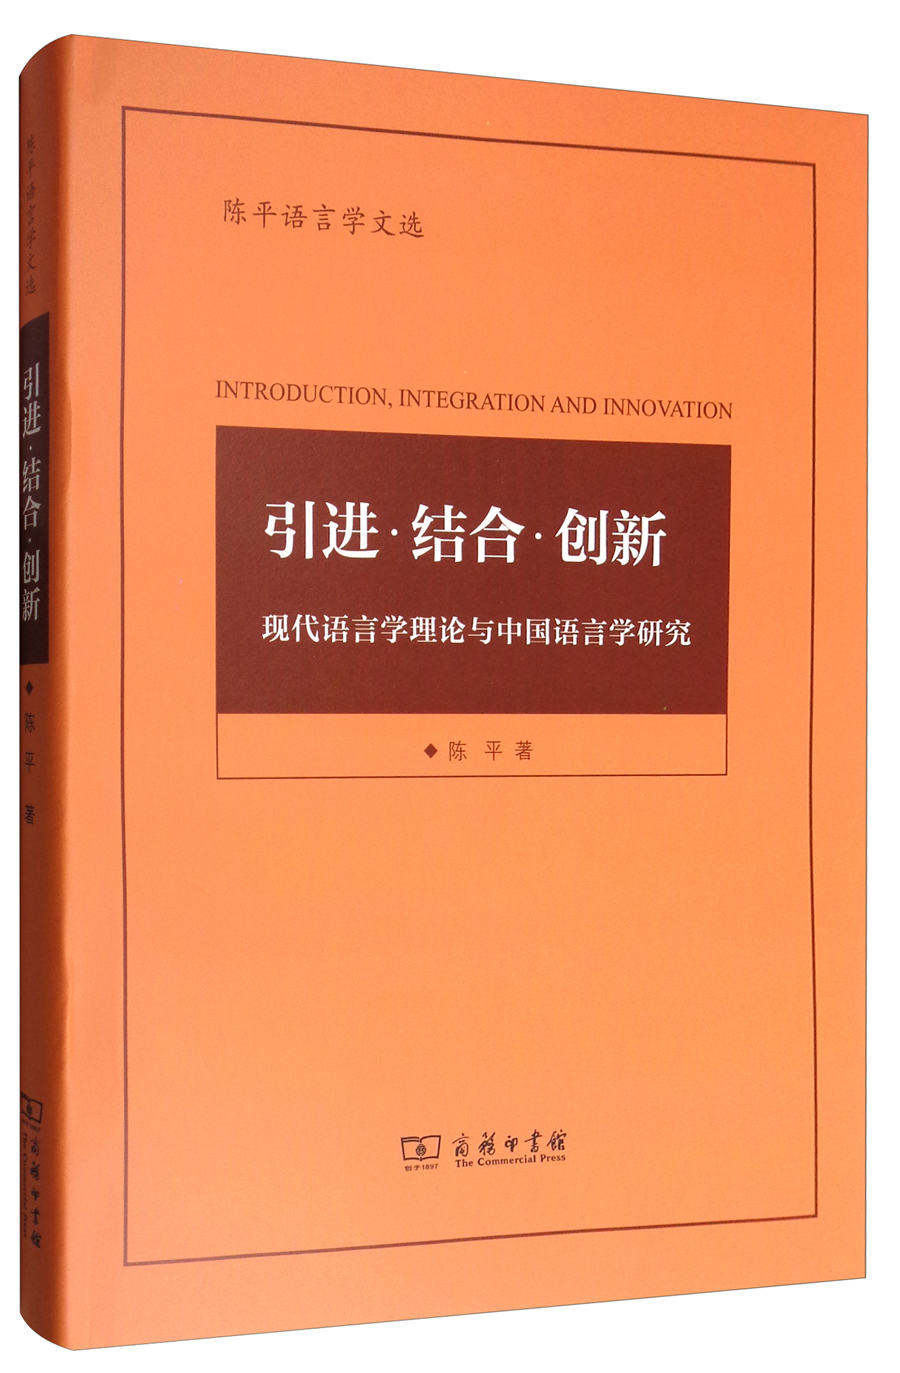 陈平语言学文选 引进·结合·创新：现代语言学理论与中国语言学研究 kindle格式下载